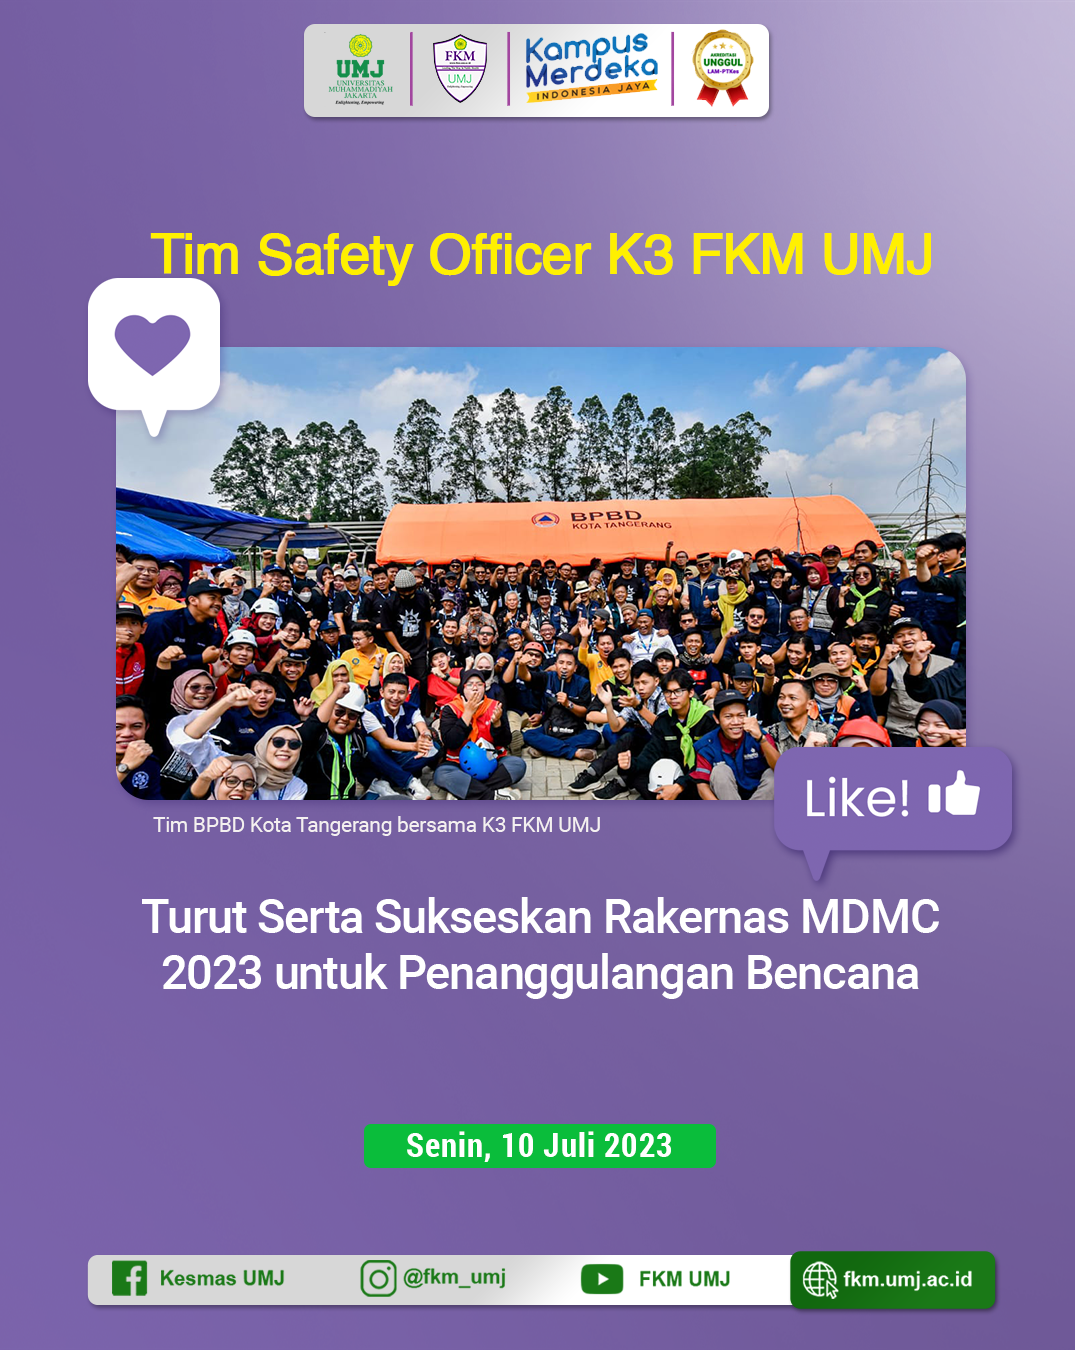 Tim Safety Officer K3 FKM UMJ Turut Serta Sukseskan Rakernas MDMC 2023 untuk Penanggulangan Bencana